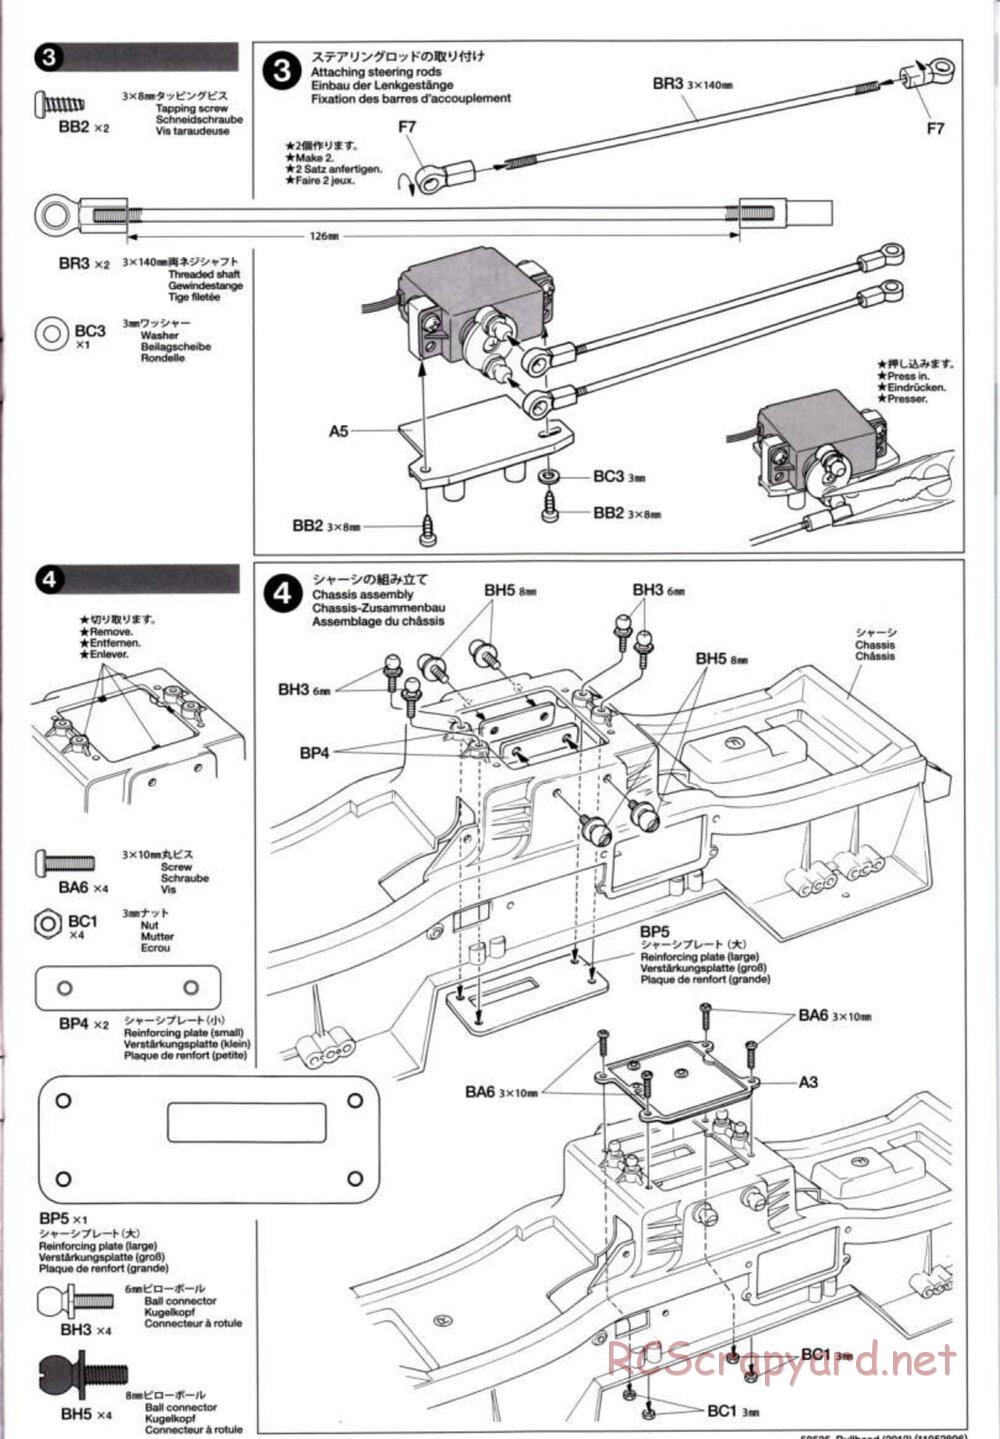 Tamiya - Bullhead 2012 - CB Chassis - Manual - Page 5